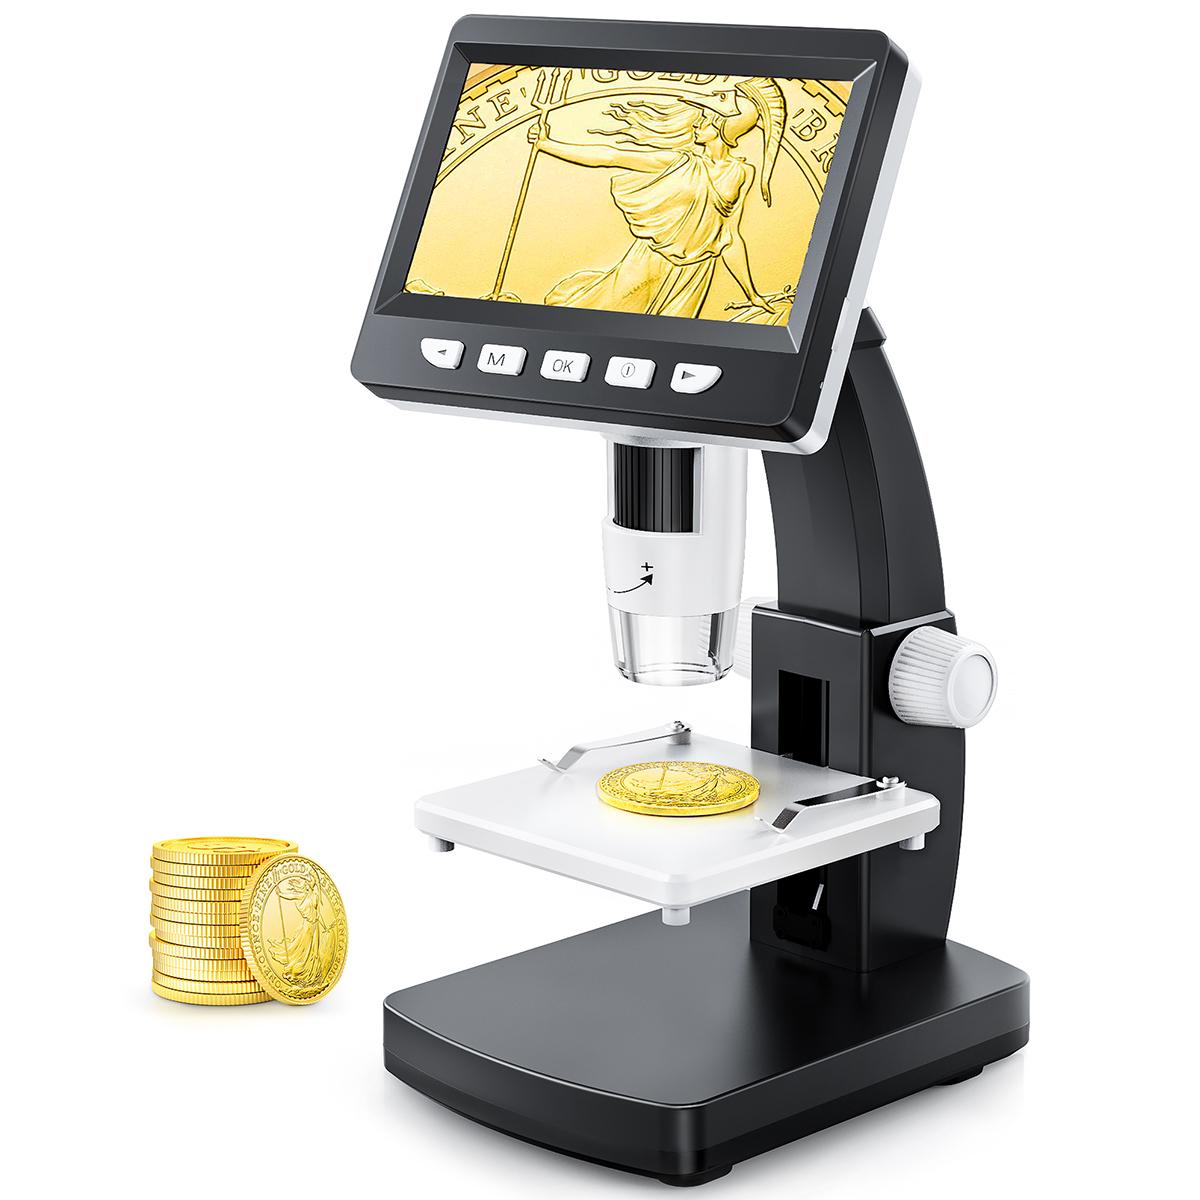 Achetez en gros Microscope Pour Enfants Avec Grossissement 80x